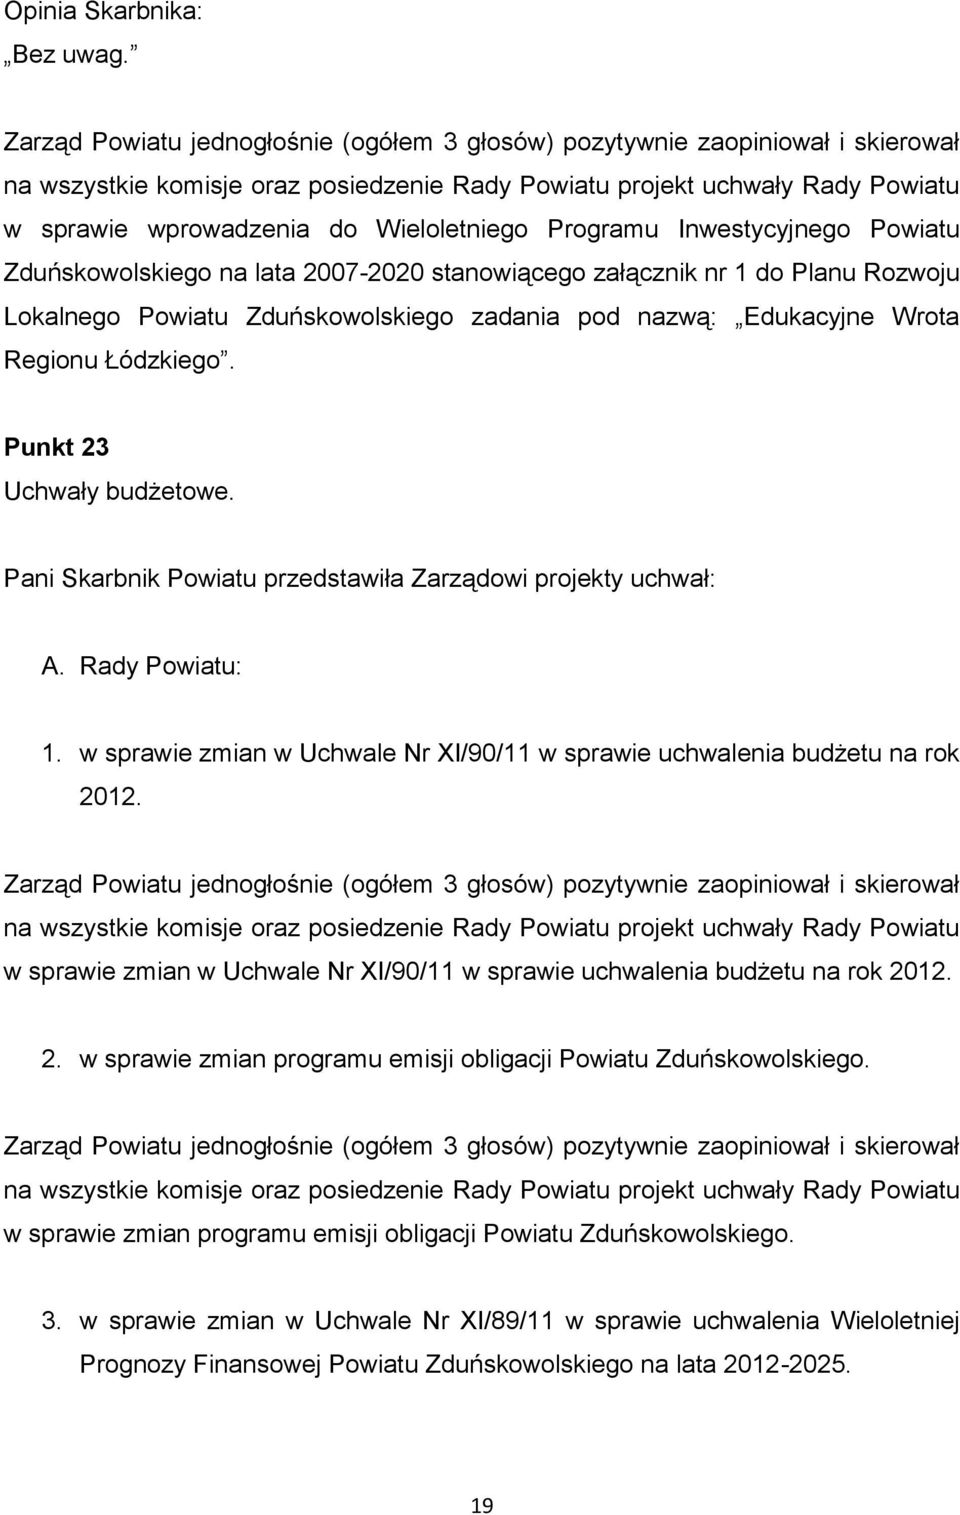 Wieloletniego Programu Inwestycyjnego Powiatu Zduńskowolskiego na lata 2007-2020 stanowiącego załącznik nr 1 do Planu Rozwoju Lokalnego Powiatu Zduńskowolskiego zadania pod nazwą: Edukacyjne Wrota